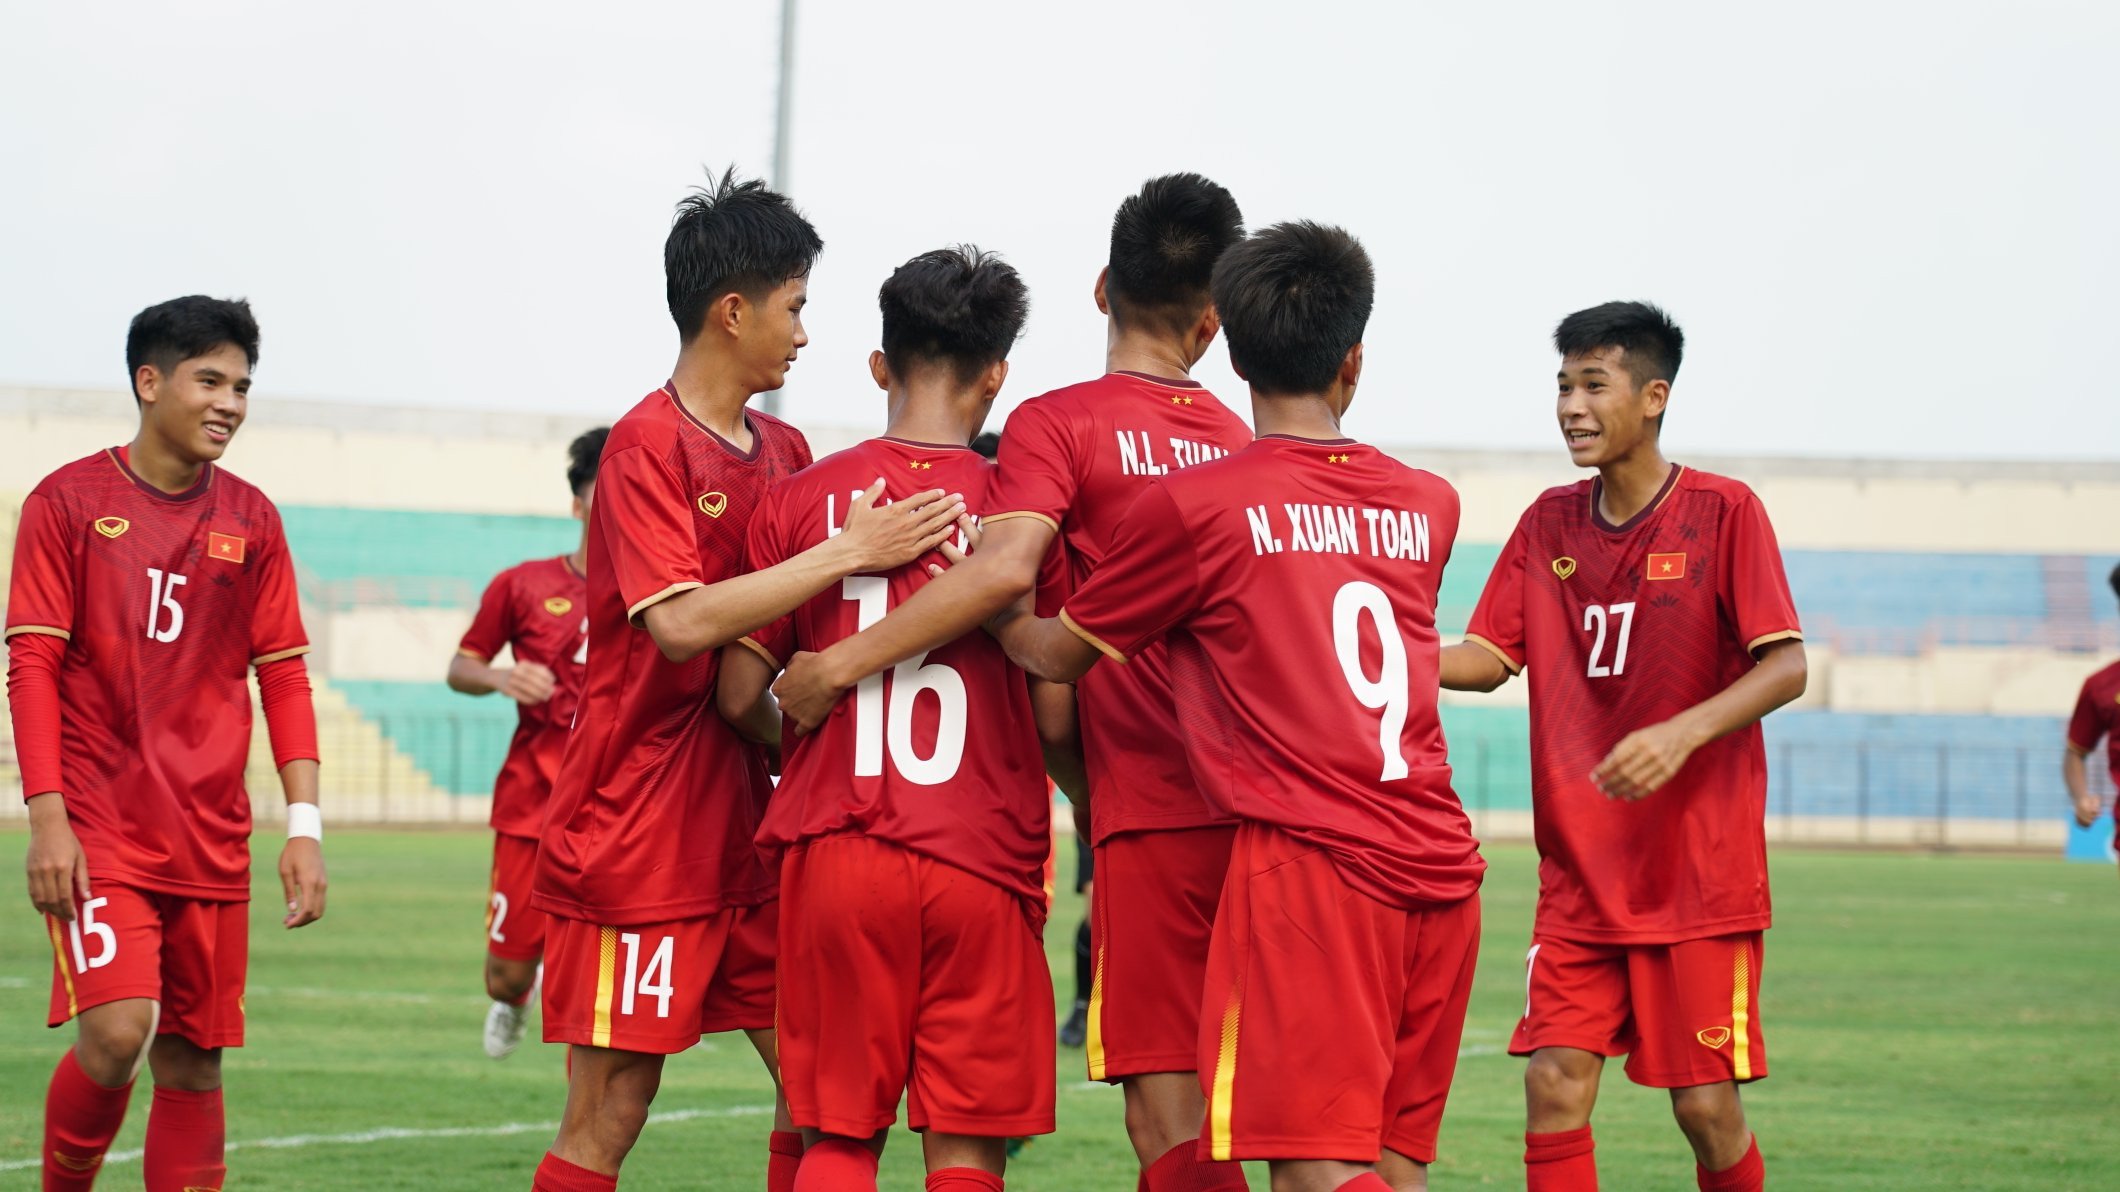 Jelang Melawan Timnas Indonesia U-16, Vietnam Dikabarkan Hadapi Masalah Serius